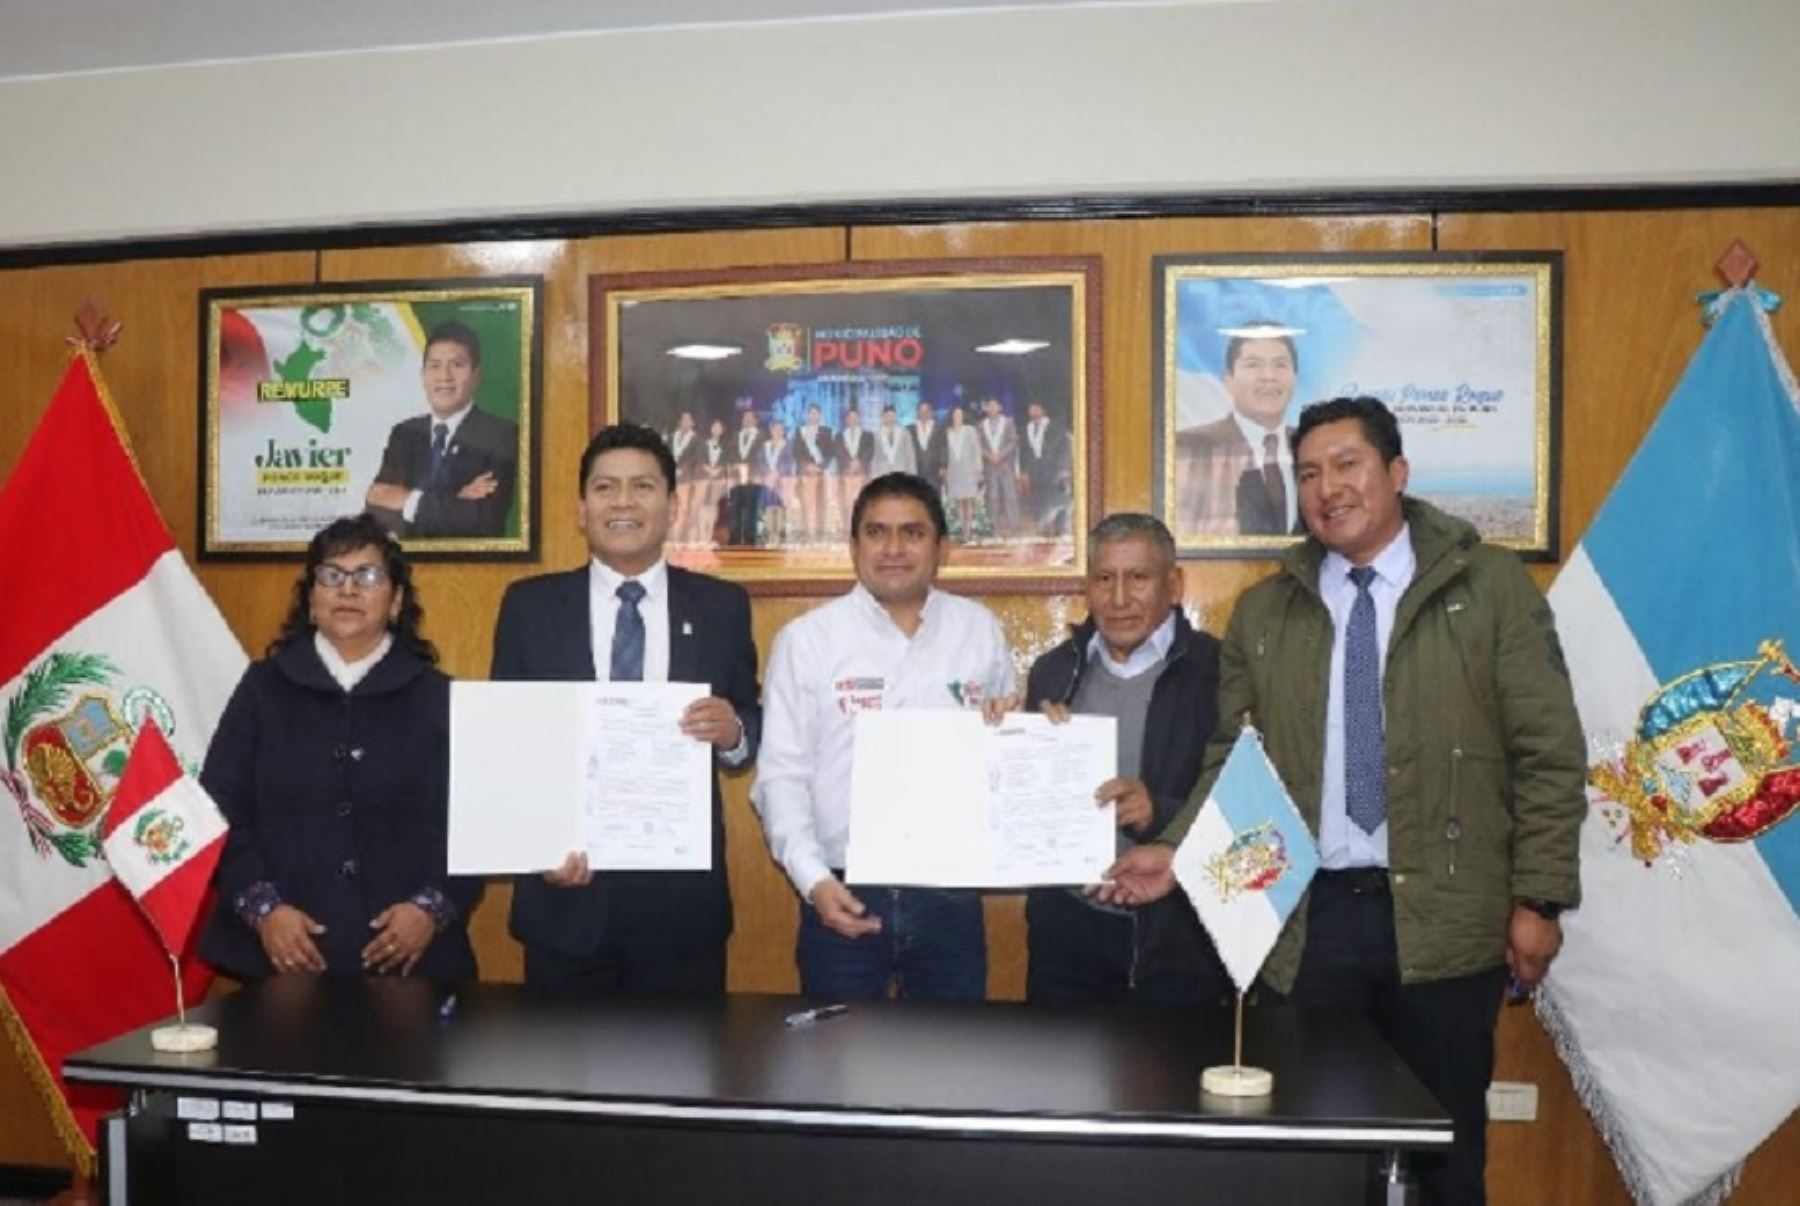 El Ministerio de Trabajo y Promoción del Empleo, a través de su programa de empleo temporal Llamkasun Perú, firmó acuerdos con alcaldes de Puno para crear 600 puestos de trabajo en beneficio de la población vulnerable de esa región.